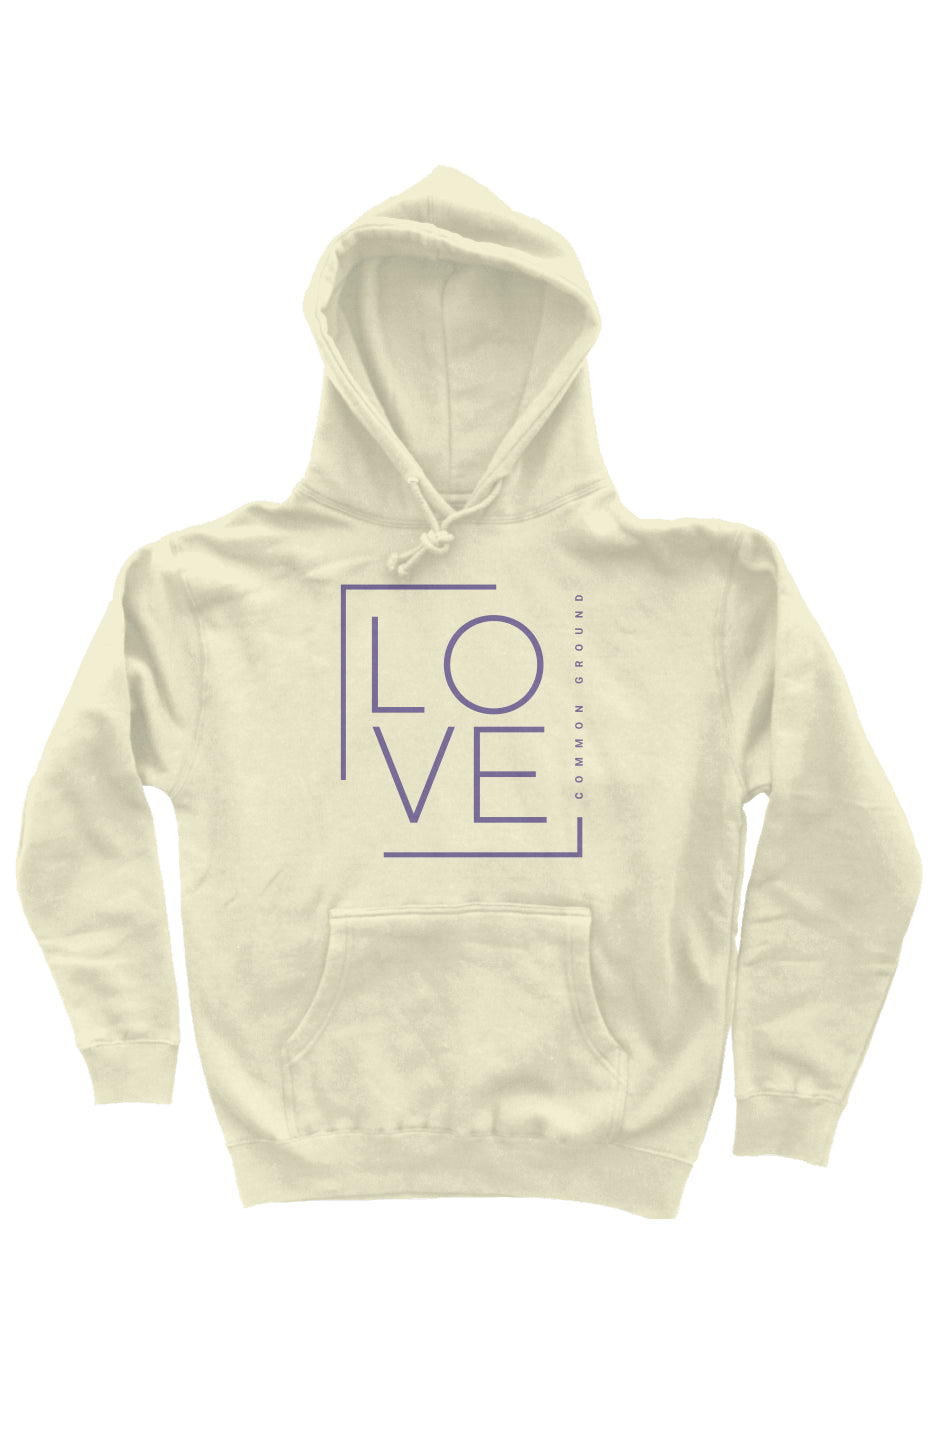 Love hoodie - Light Yellow